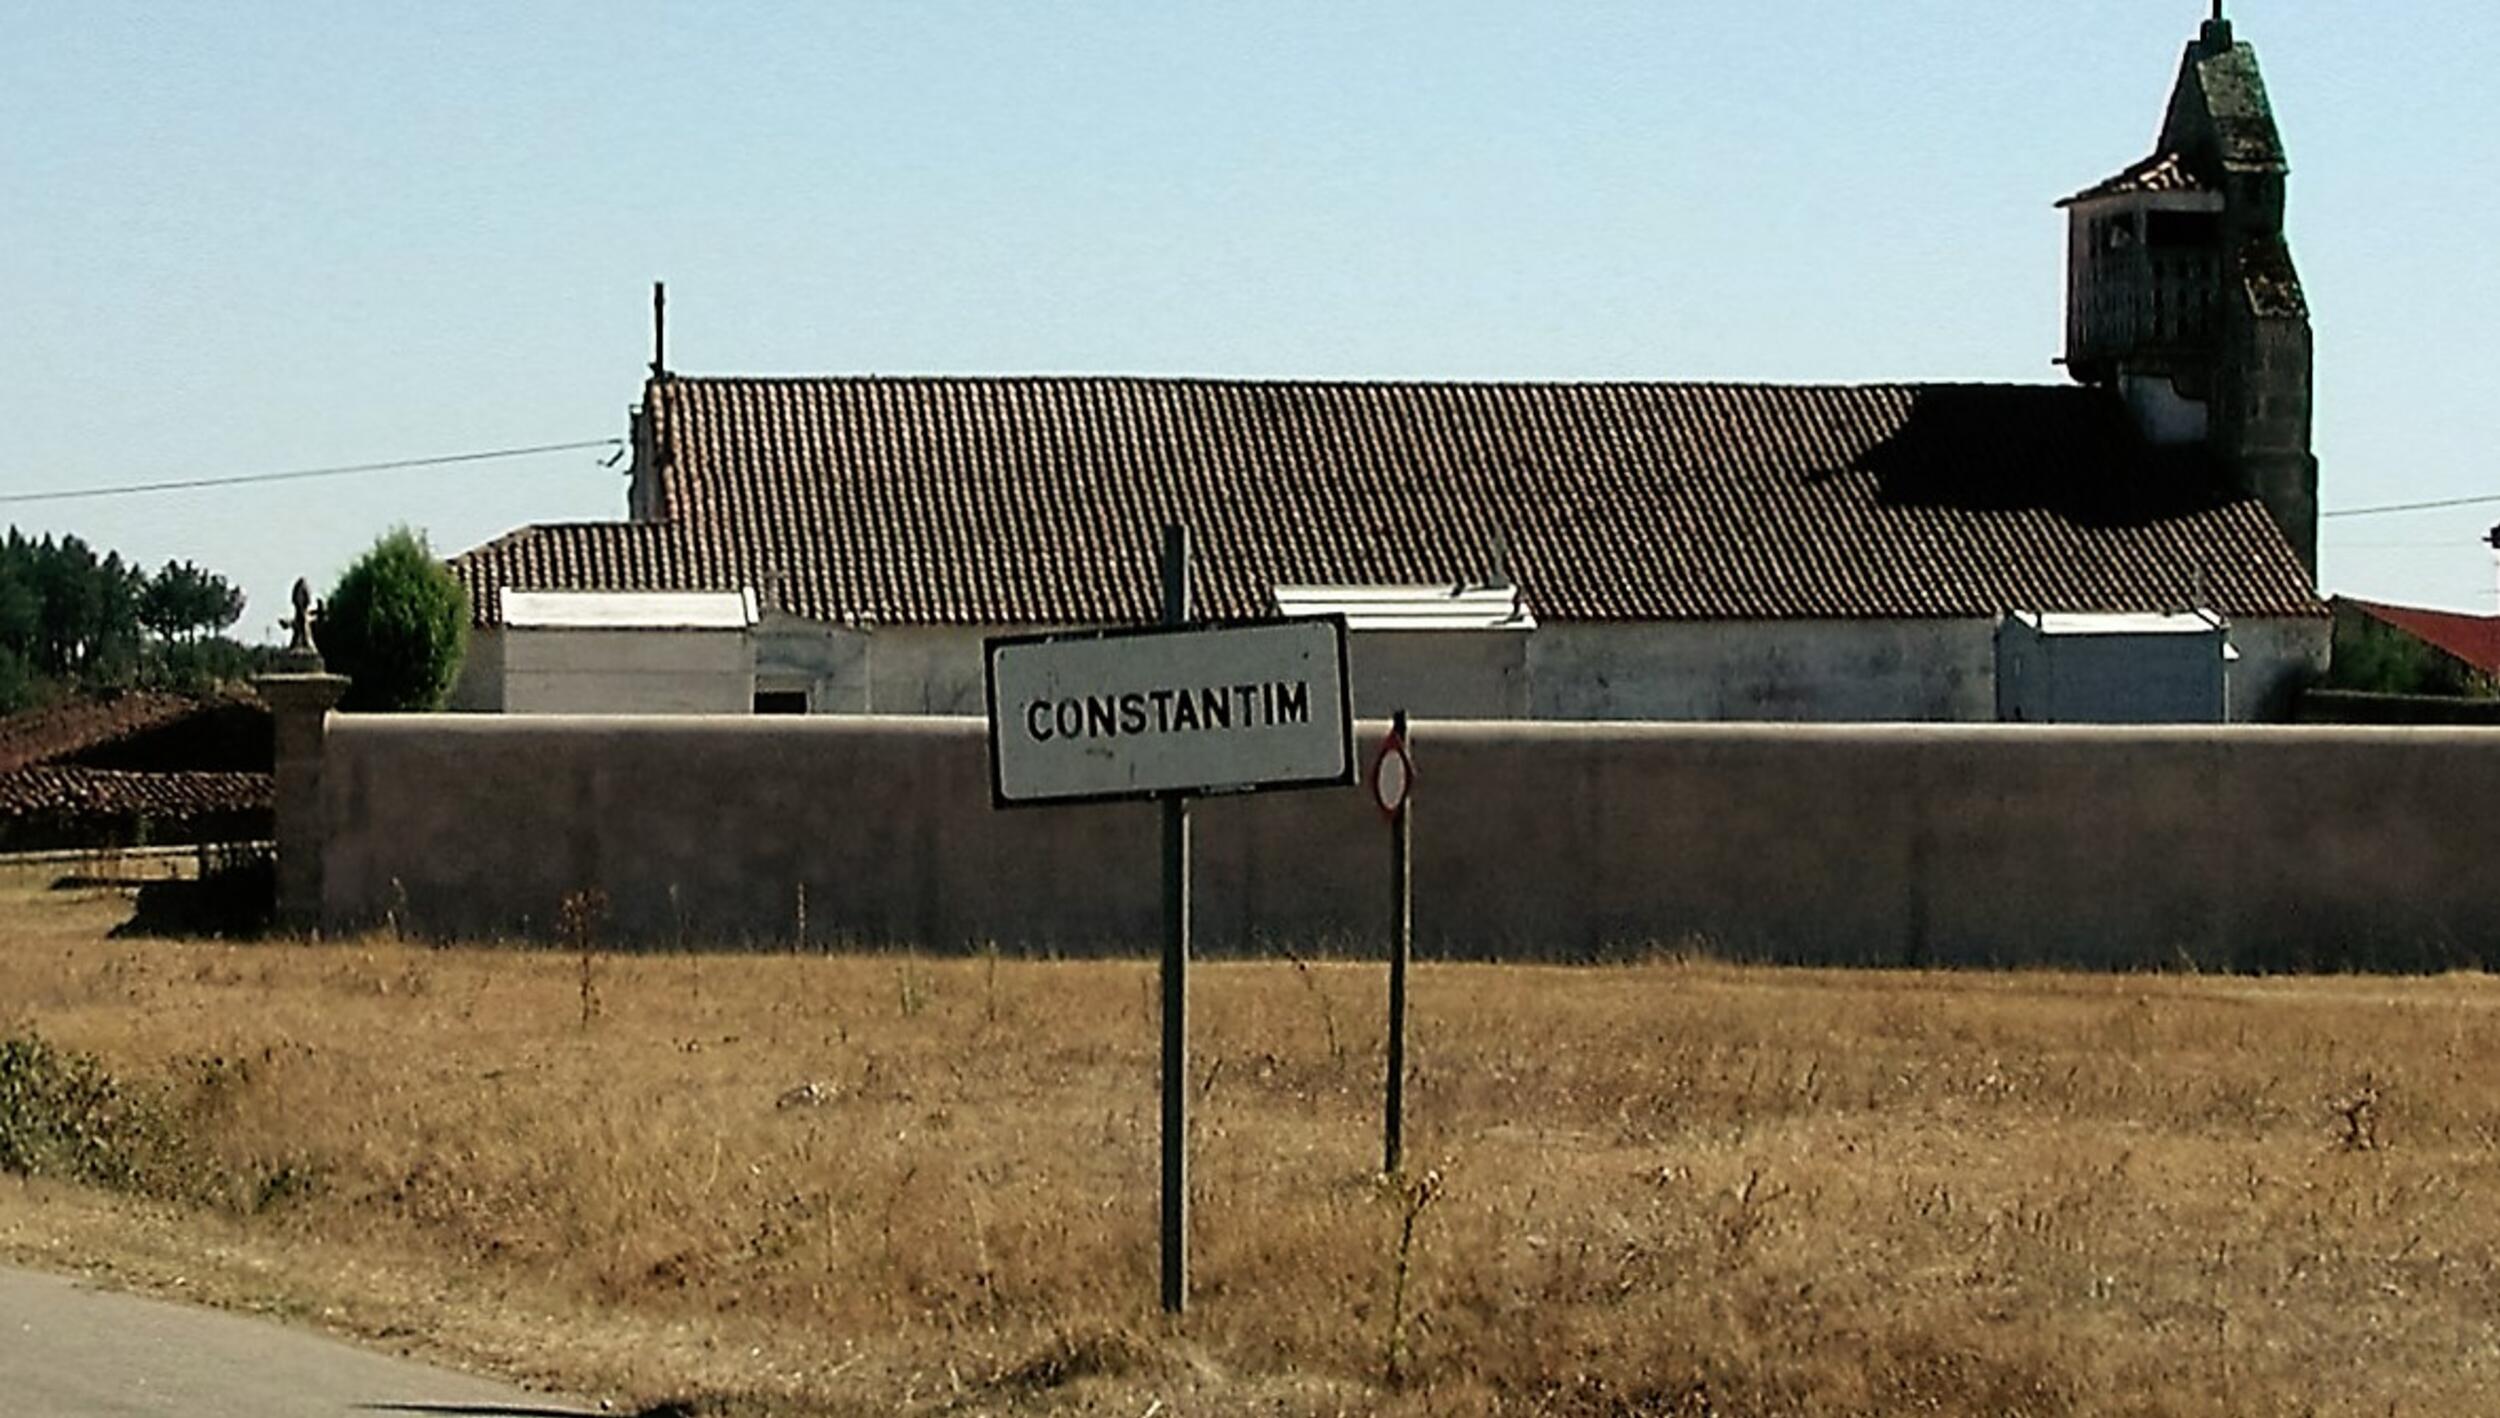 Constantim